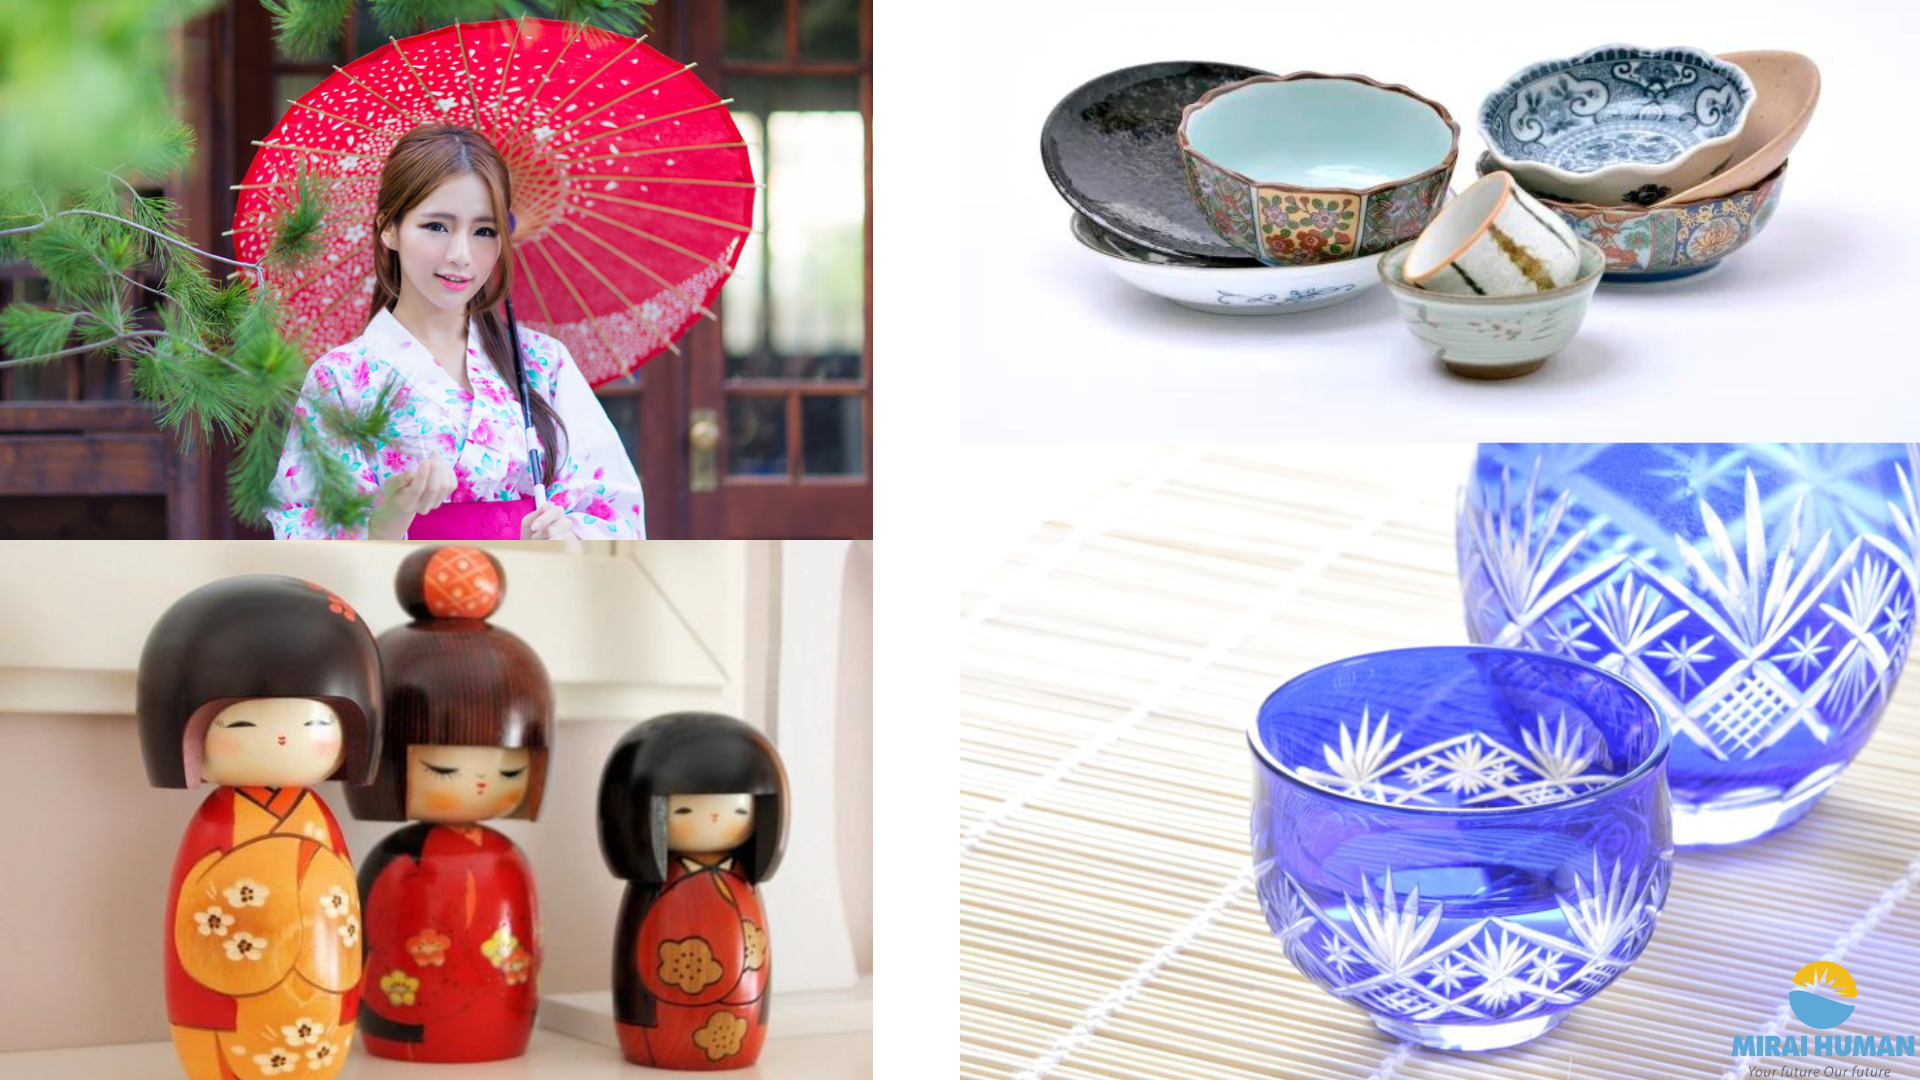 Đồ truyền thống Nhật Bản: Trang phục truyền thống Nhật Bản vẫn là điểm nhấn của cuộc sống hiện đại tại đất nước này. Bằng sự kết hợp giữa truyền thống và hiện đại, các nhà thiết kế Nhật Bản đã tạo ra những bộ trang phục độc đáo và có giá trị nghệ thuật. Hãy xem hình ảnh để cảm nhận sự thanh lịch và độc đáo của đồ truyền thống Nhật Bản.